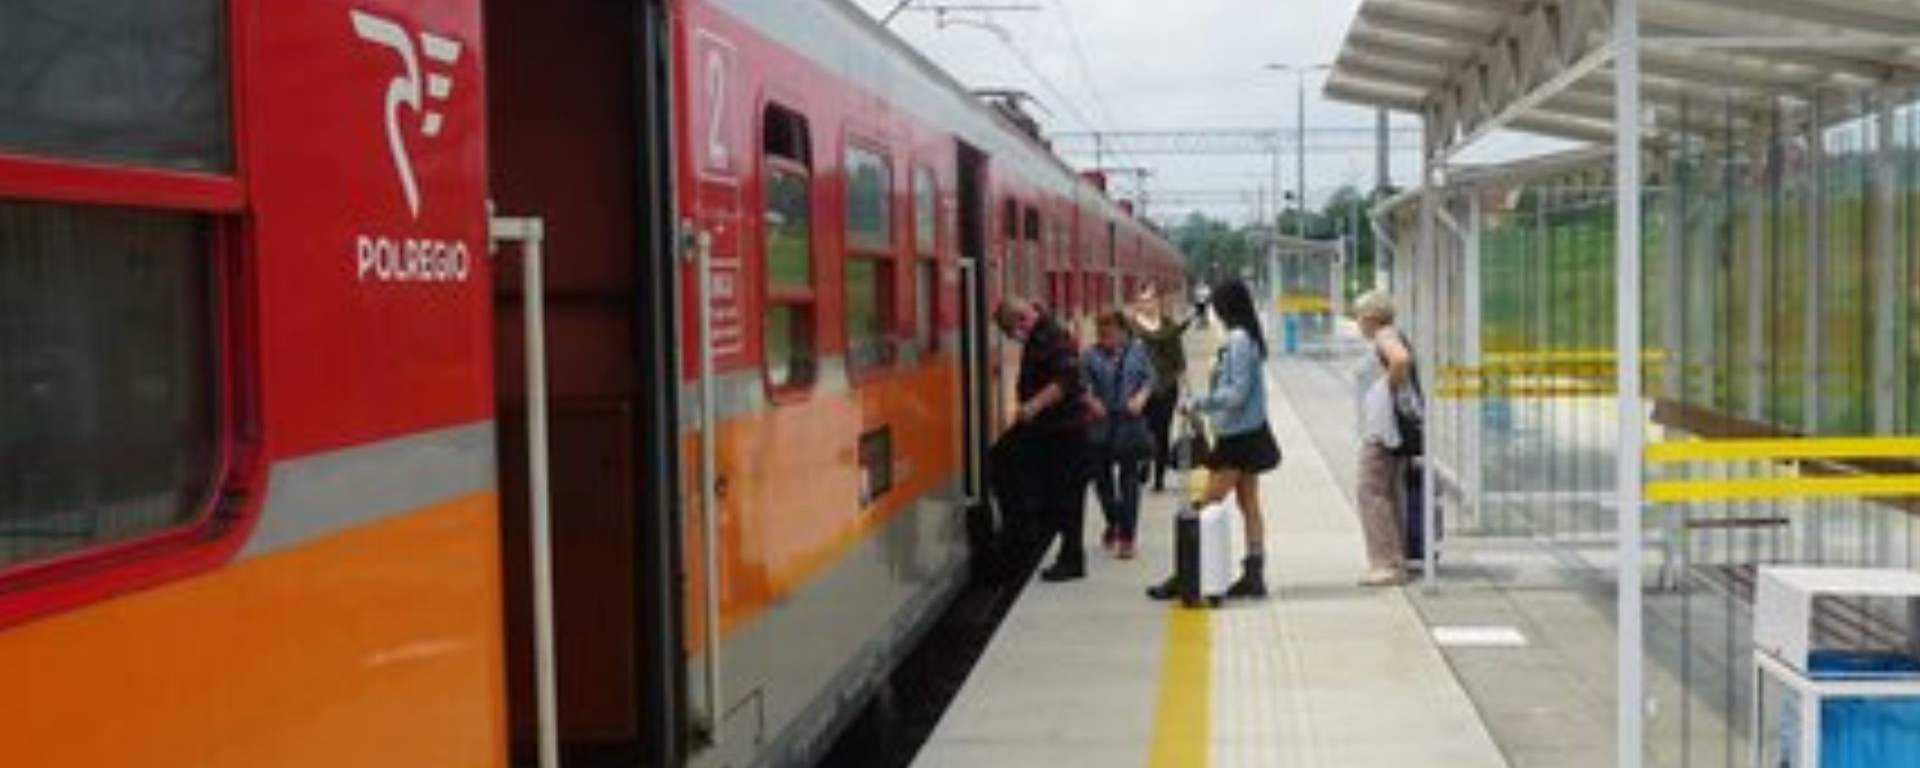 Pociąg do Zakopanego